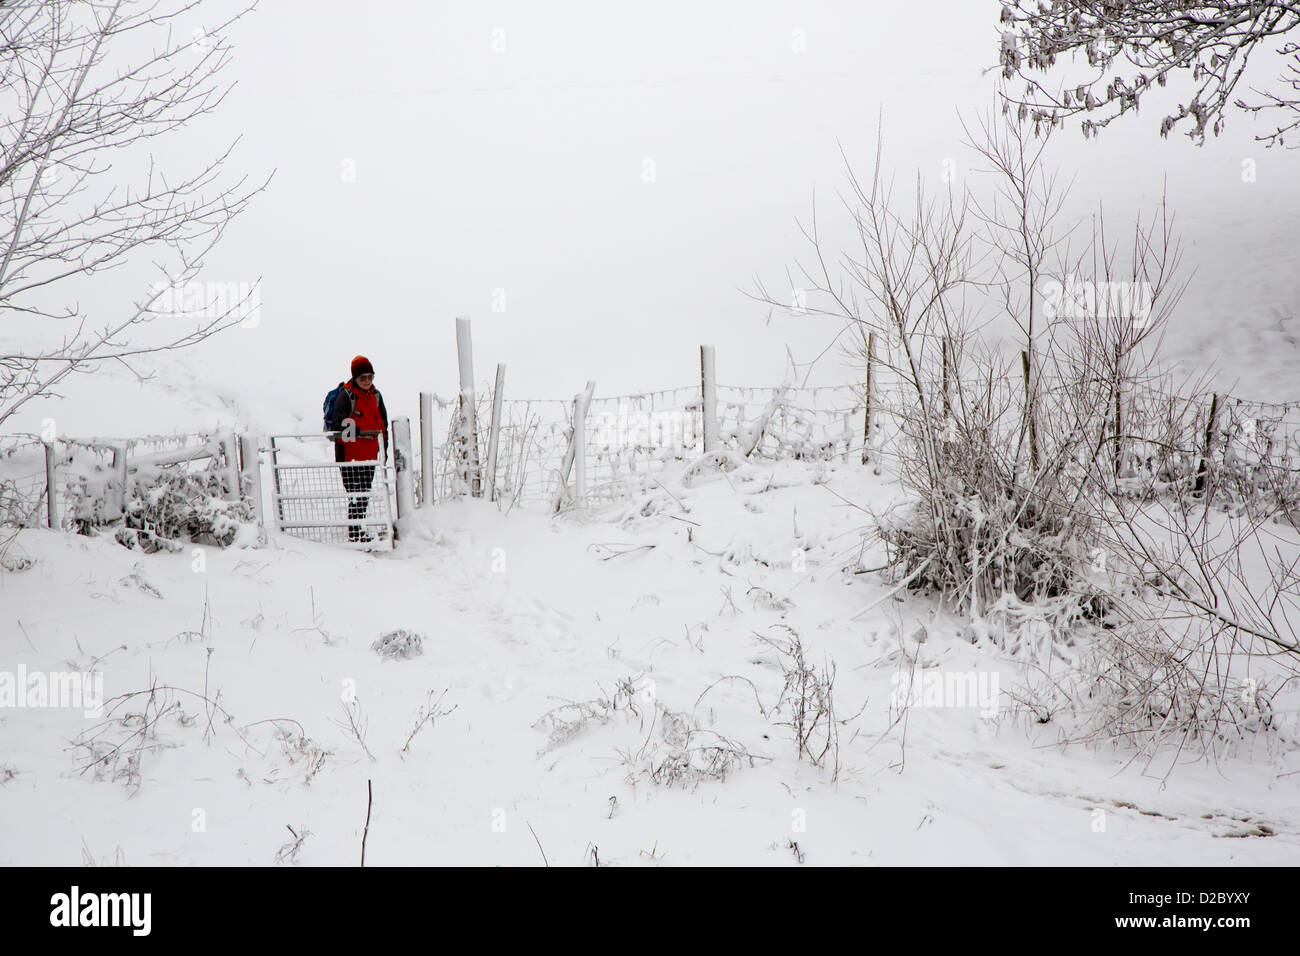 Woman walking in snowy fields, Abergavenny, Wales, UK Stock Photo